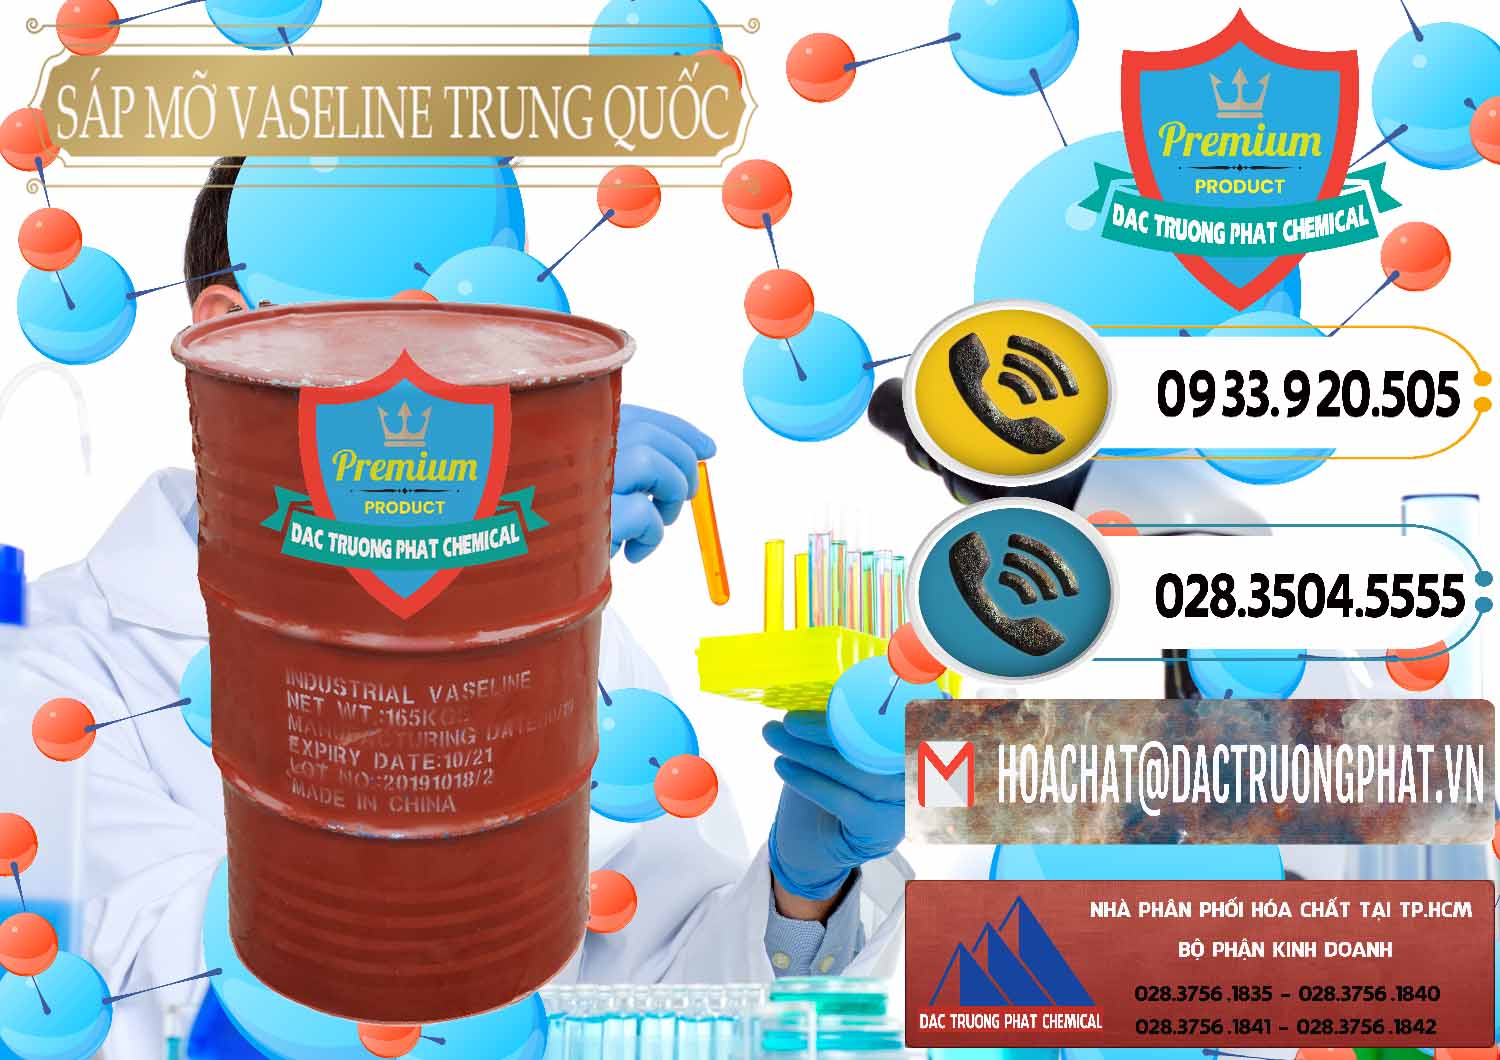 Công ty chuyên bán _ cung cấp Sáp Mỡ Vaseline Trung Quốc China - 0122 - Cty chuyên phân phối và nhập khẩu hóa chất tại TP.HCM - hoachatdetnhuom.vn